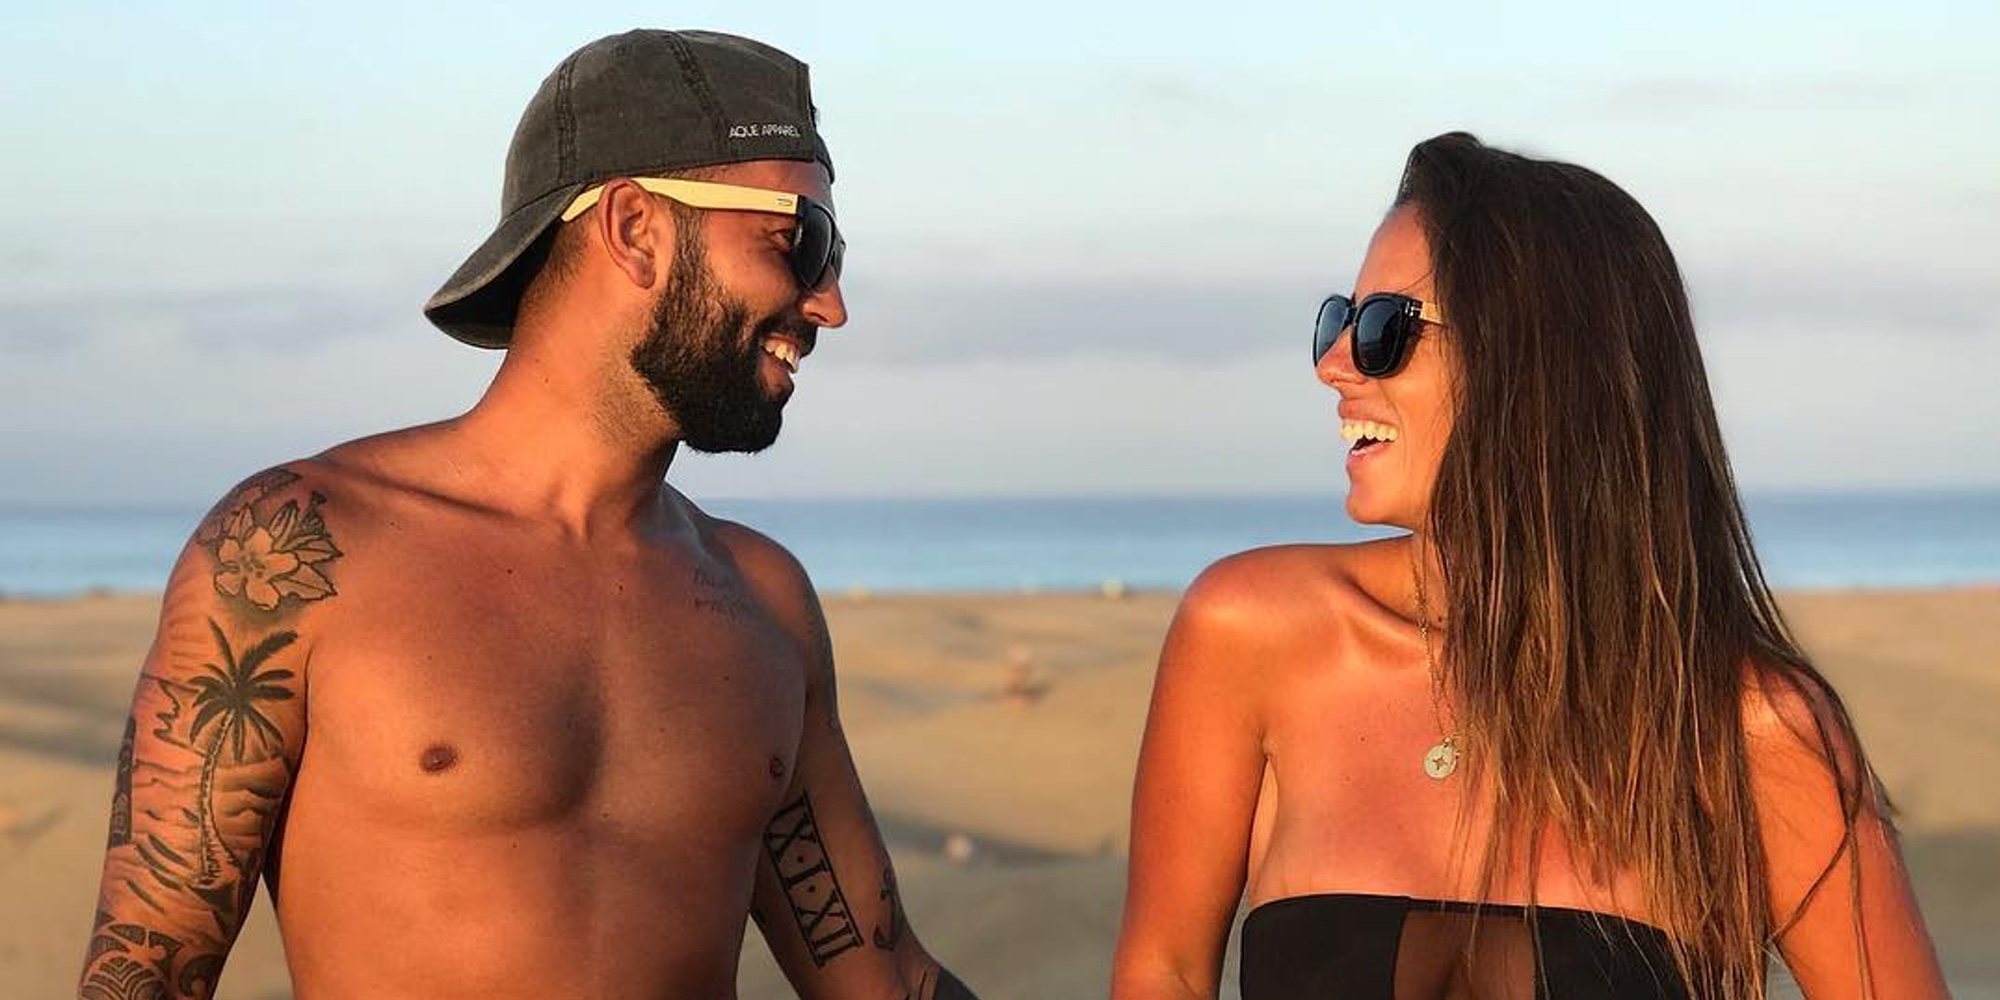 Anabel Pantoja disfruta de su verano más romántico en compañía de su novio Omar